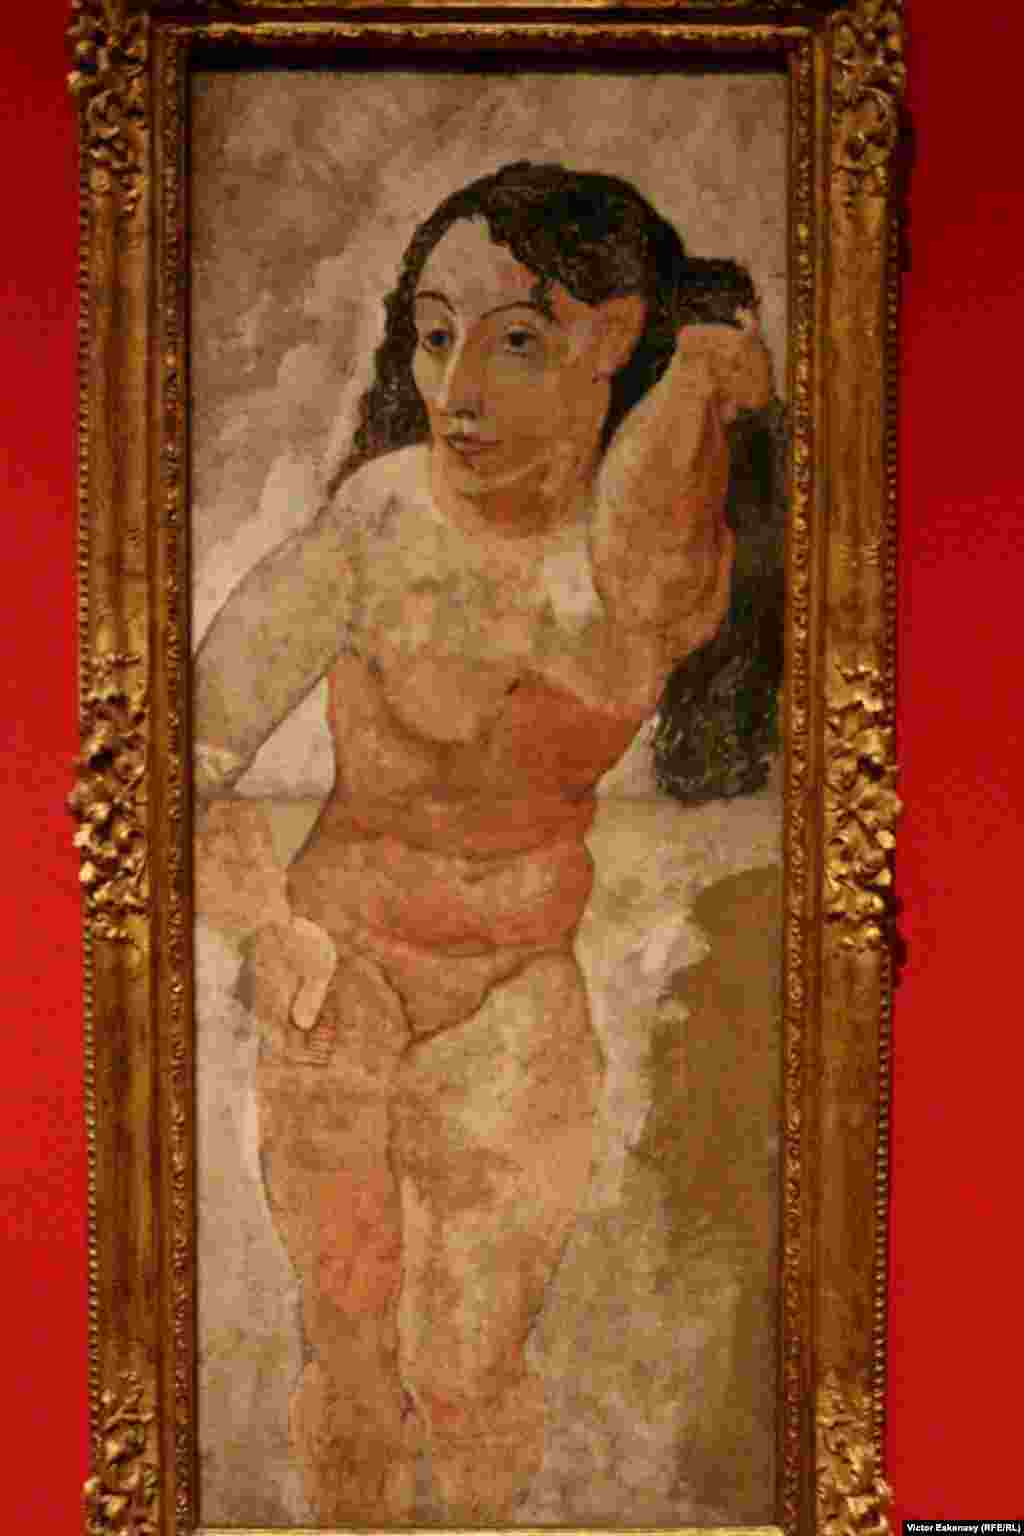 Pablo Picasso, La femme au peigne (1906).